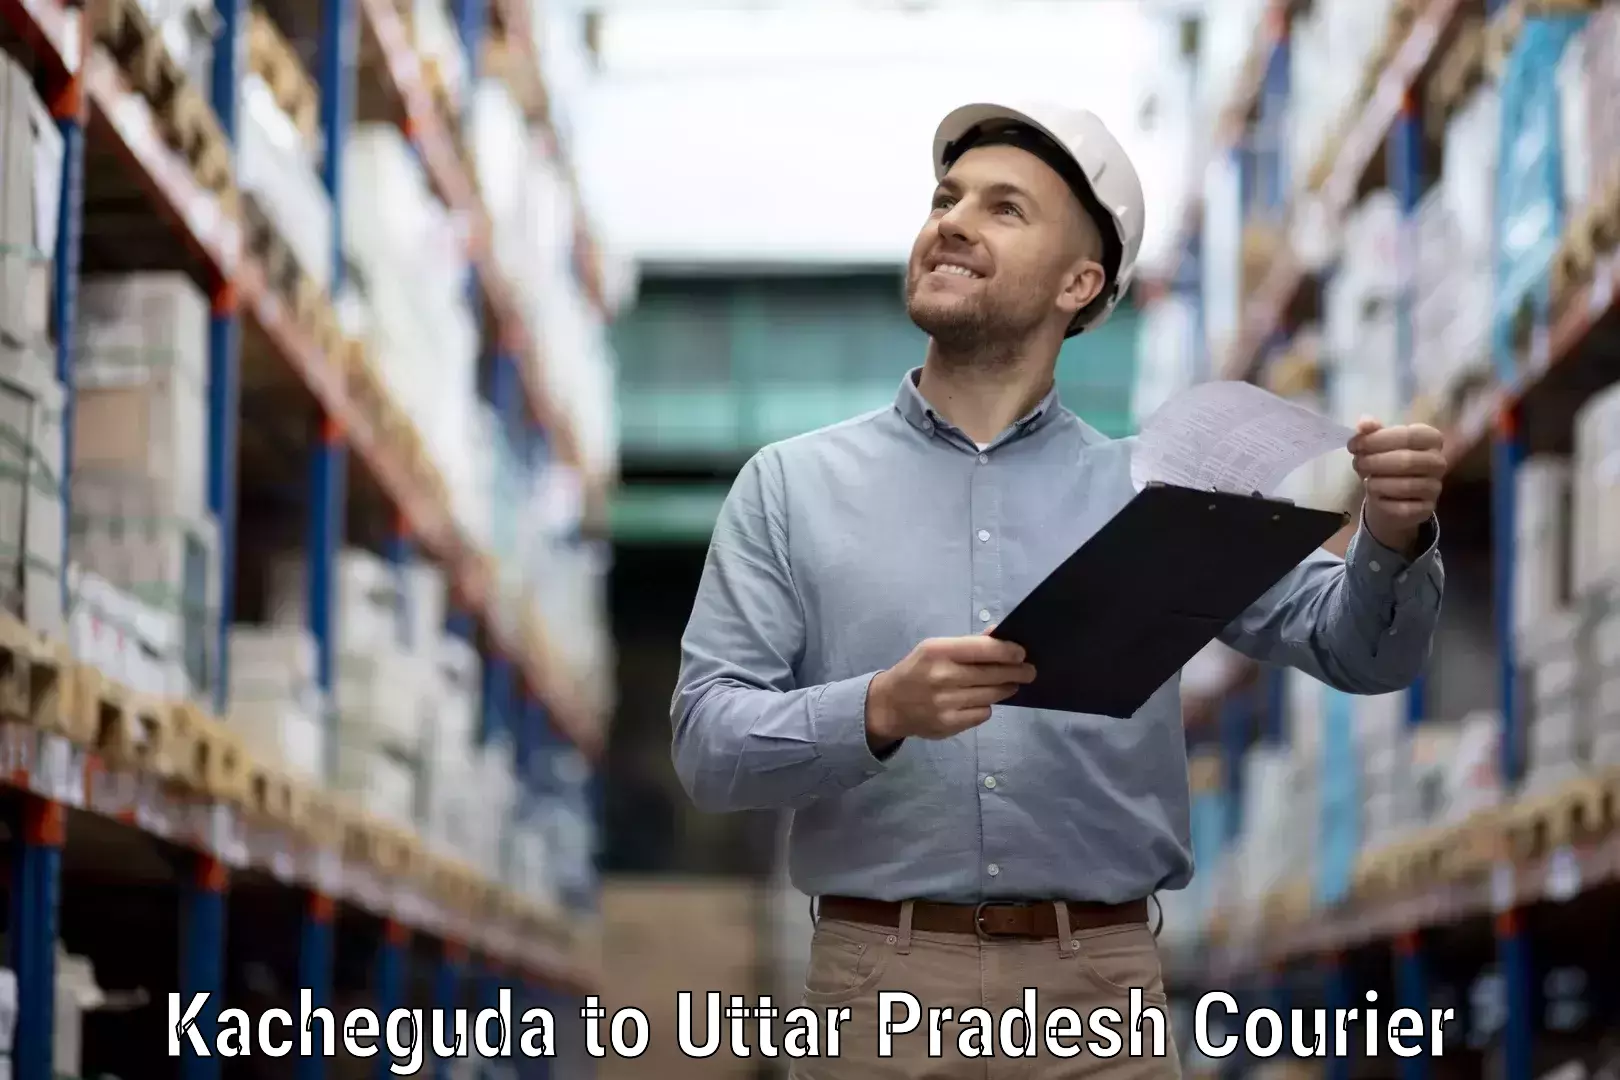 Smart logistics solutions Kacheguda to Uttar Pradesh